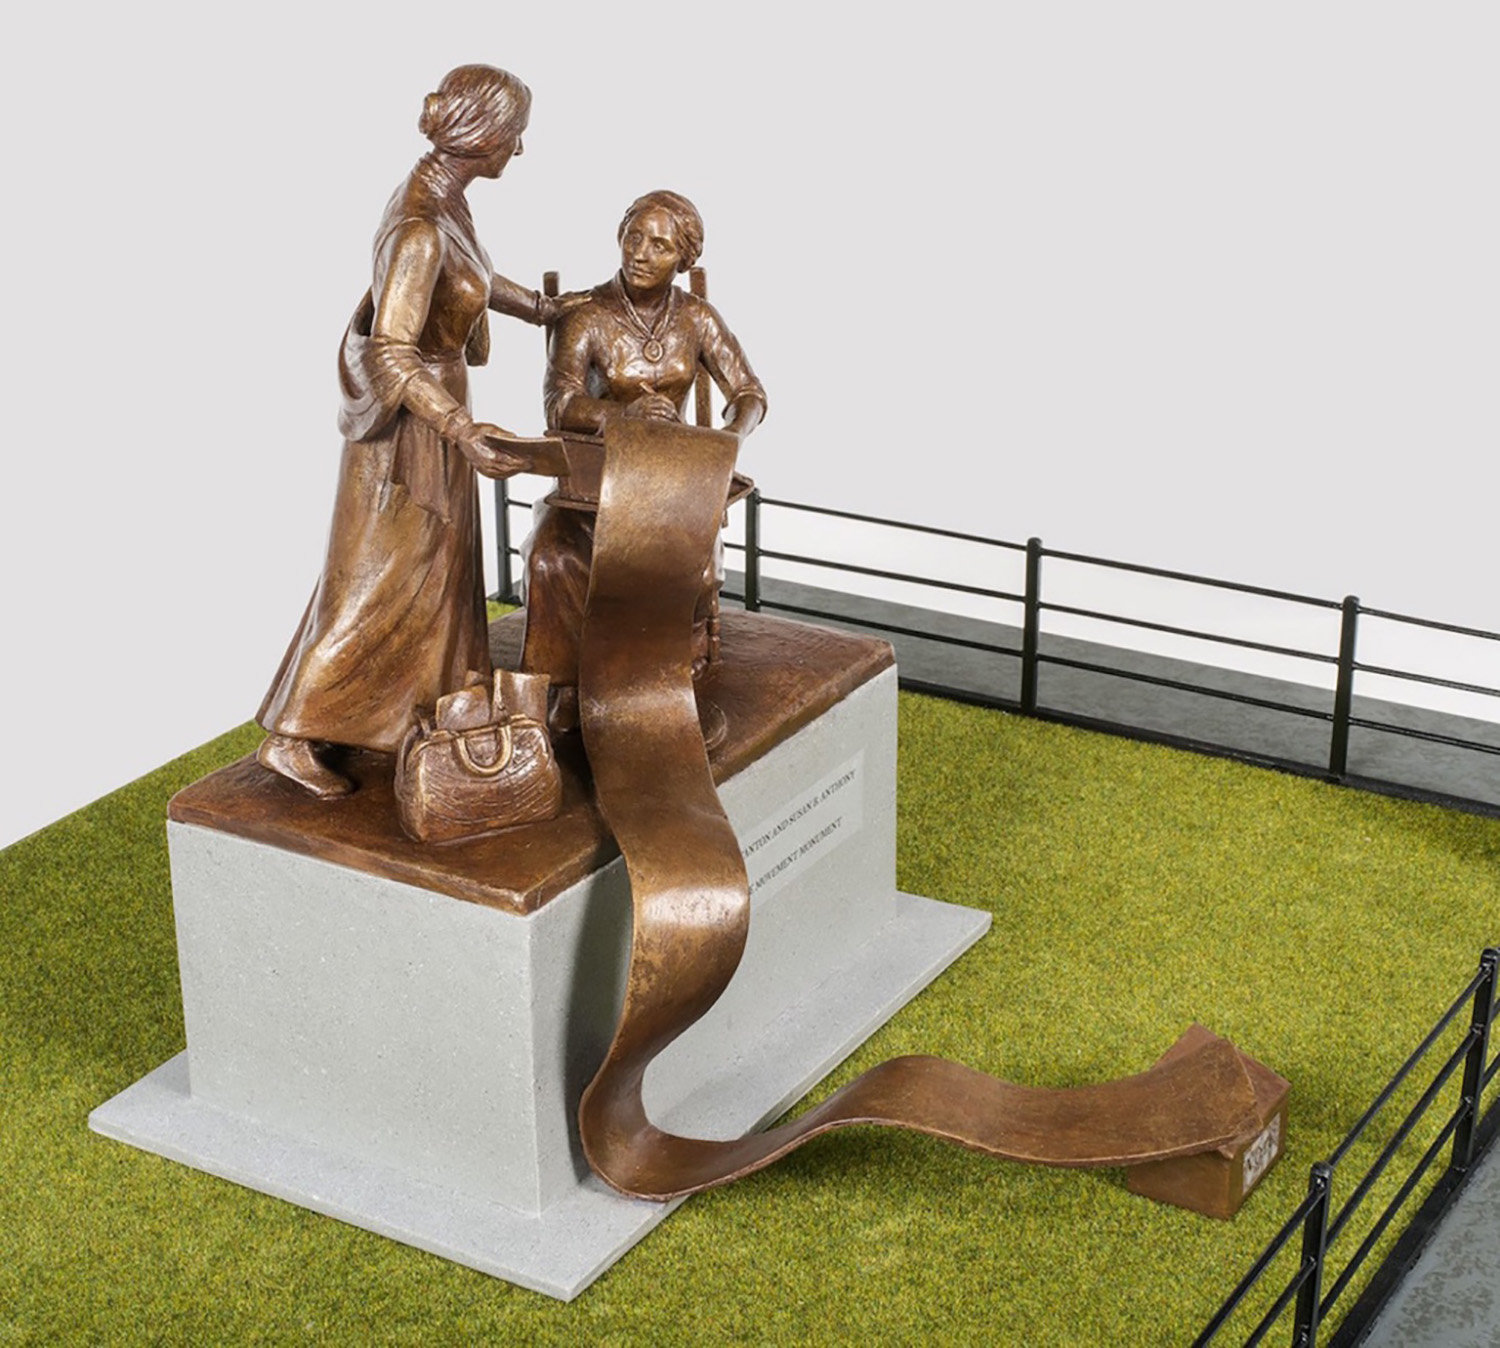 苏珊B.安东尼和伊丽莎白Cady Stanton雕塑的Maquette